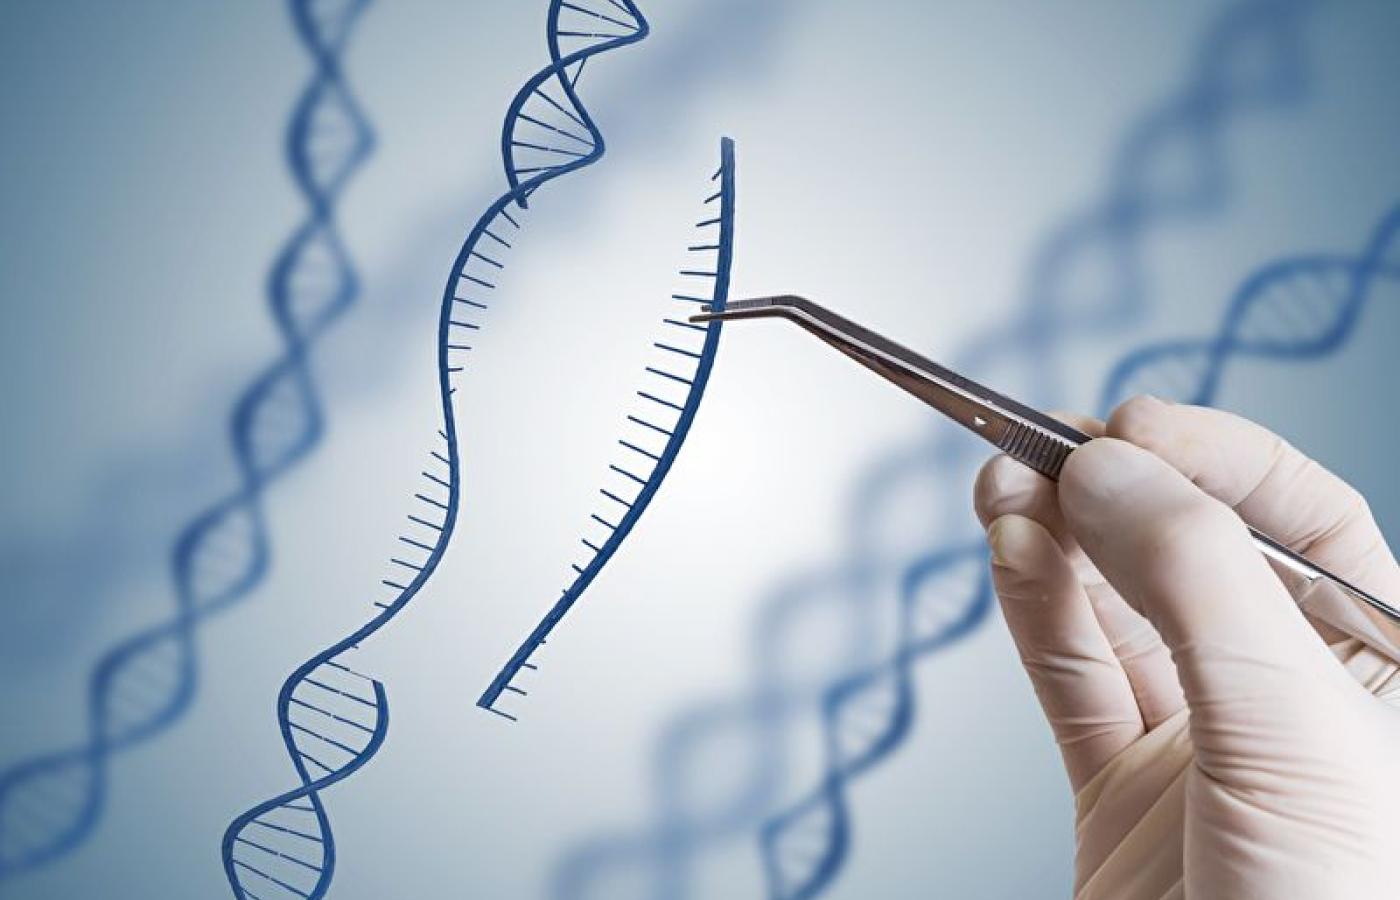 Rok temu chiński naukowiec He Jiankui poinformował o narodzinach dwóch dziewczynek, których genom edytowano przy pomocy narzędzi inżynierii genetycznej.